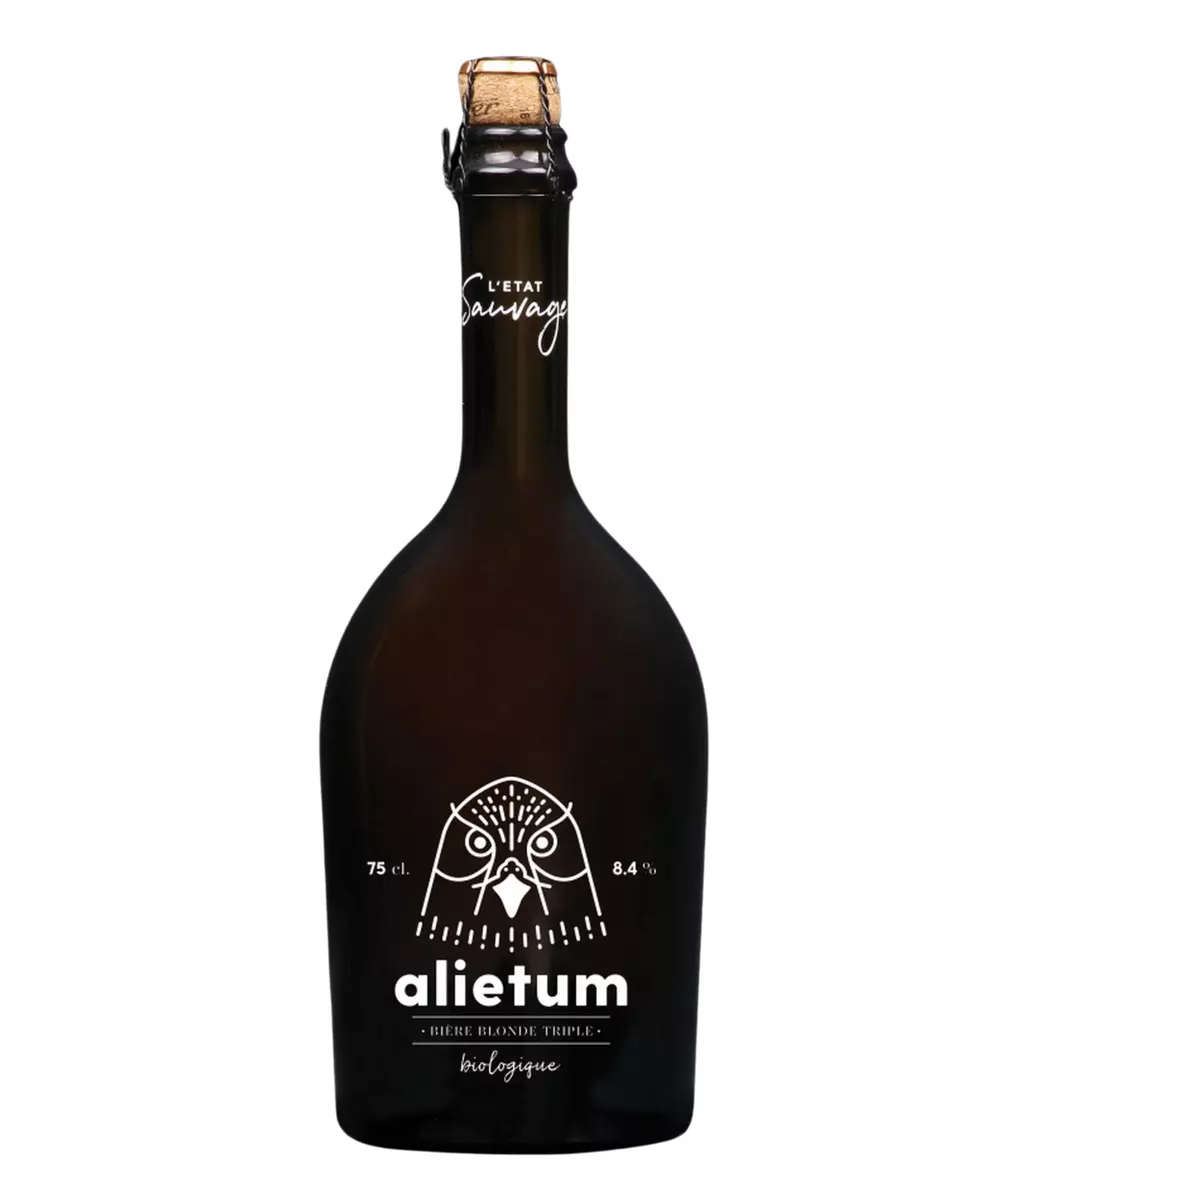 L'ETAT SAUVAGE Bière blonde triple bio alietum 8.4% 75cl